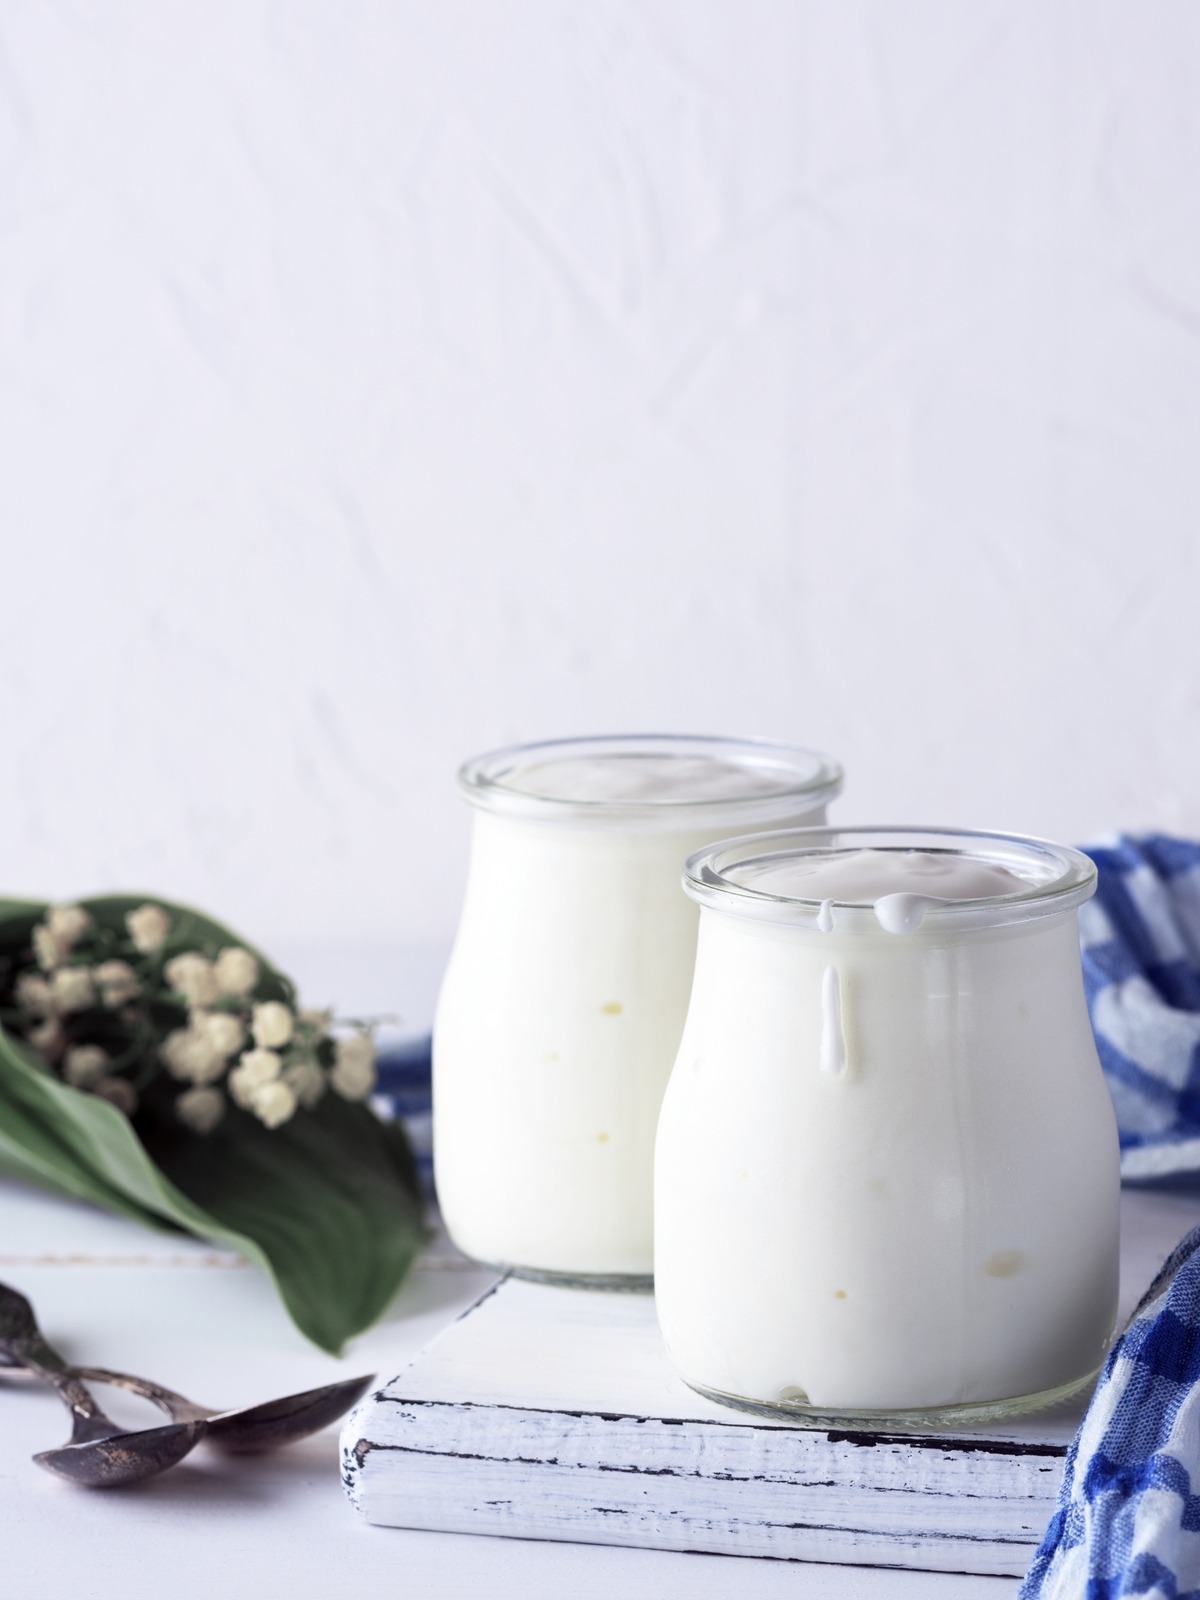 homemade yogurt in a glass jar